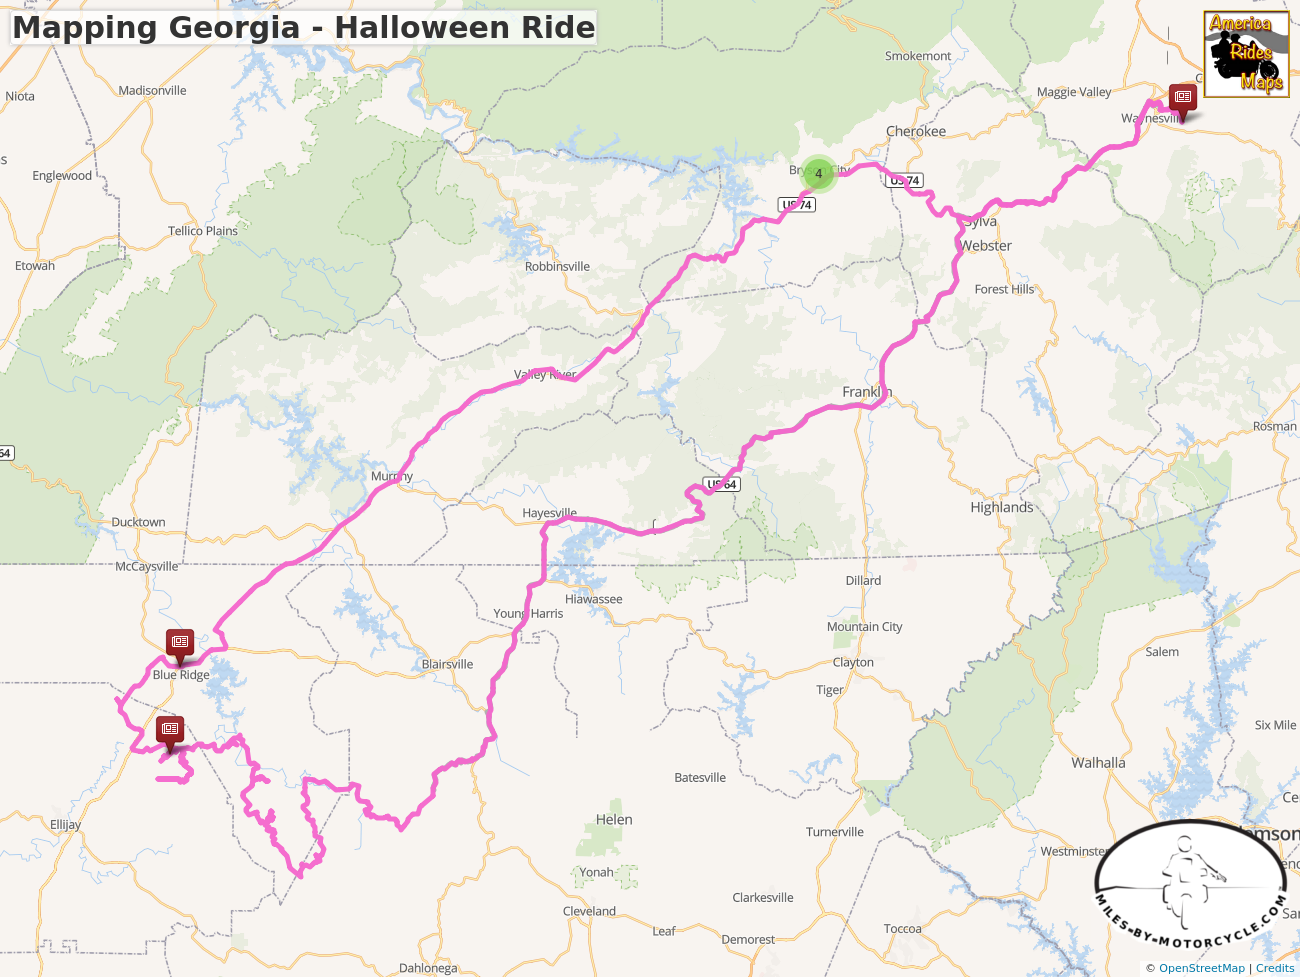 Mapping Georgia - Halloween Ride